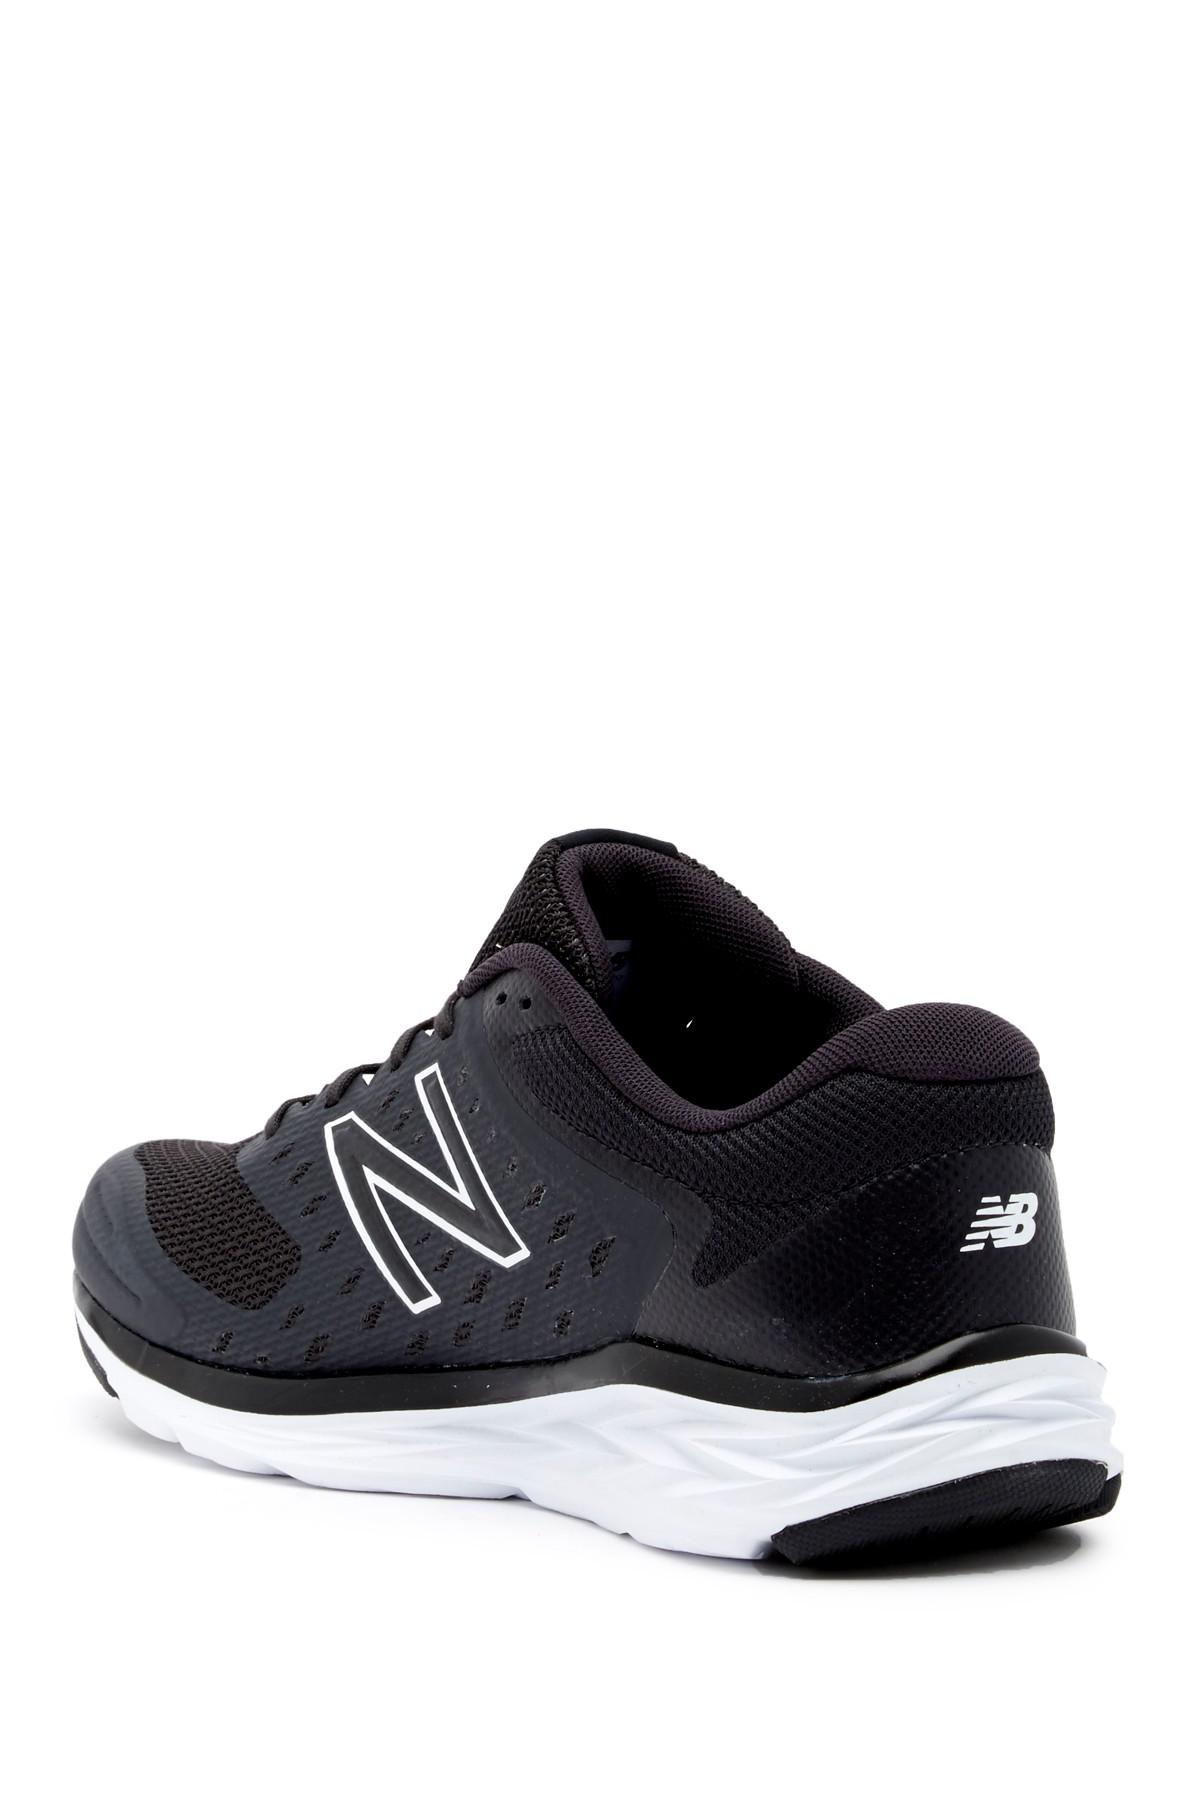 New Balance Rubber M490v5 Running Sneaker - Wide Width in Black for Men -  Lyst